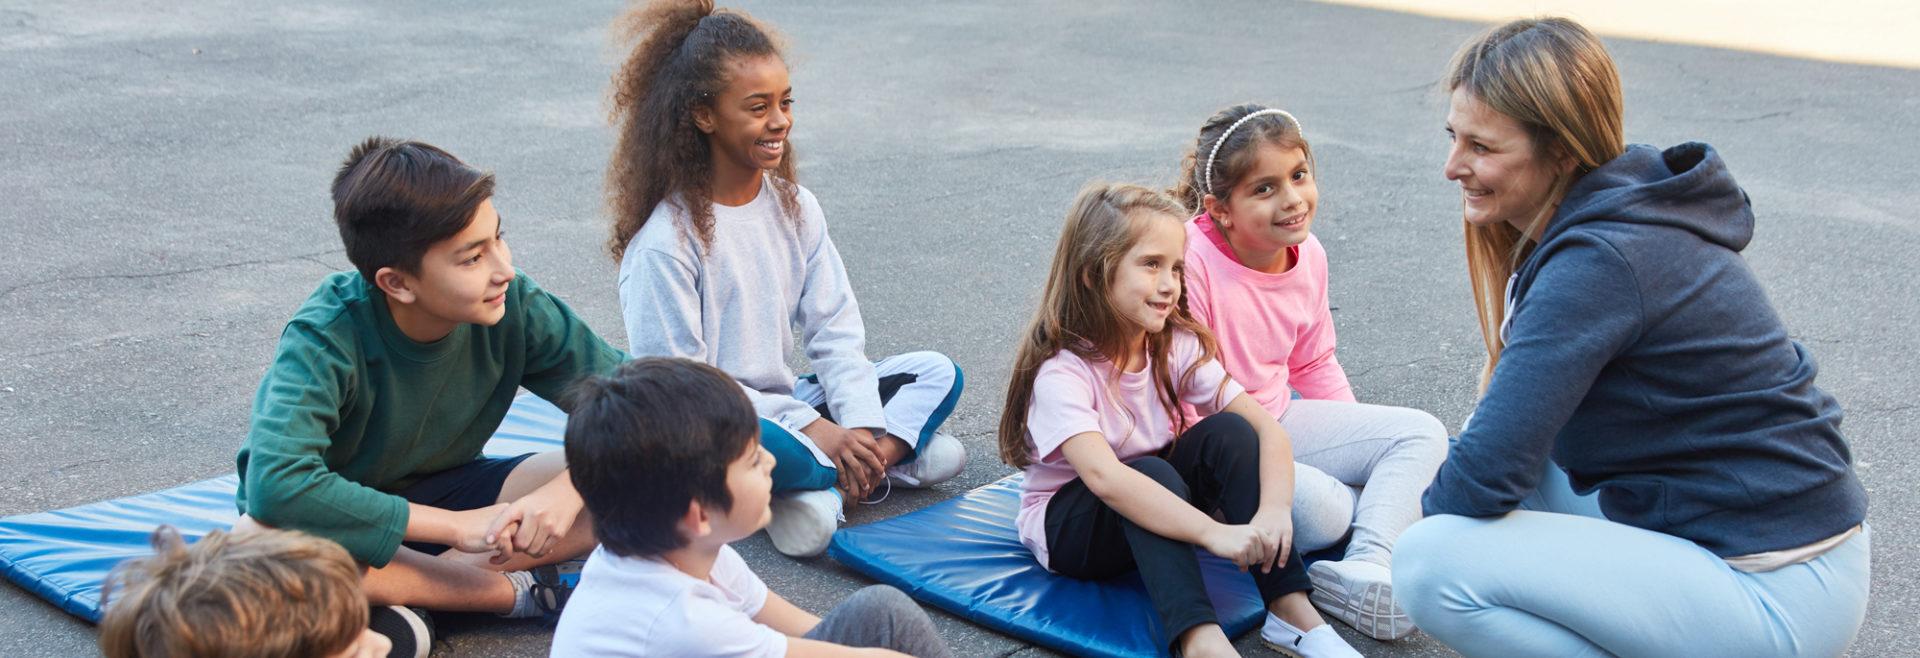 孩子们坐在瑜伽垫上听教练讲课